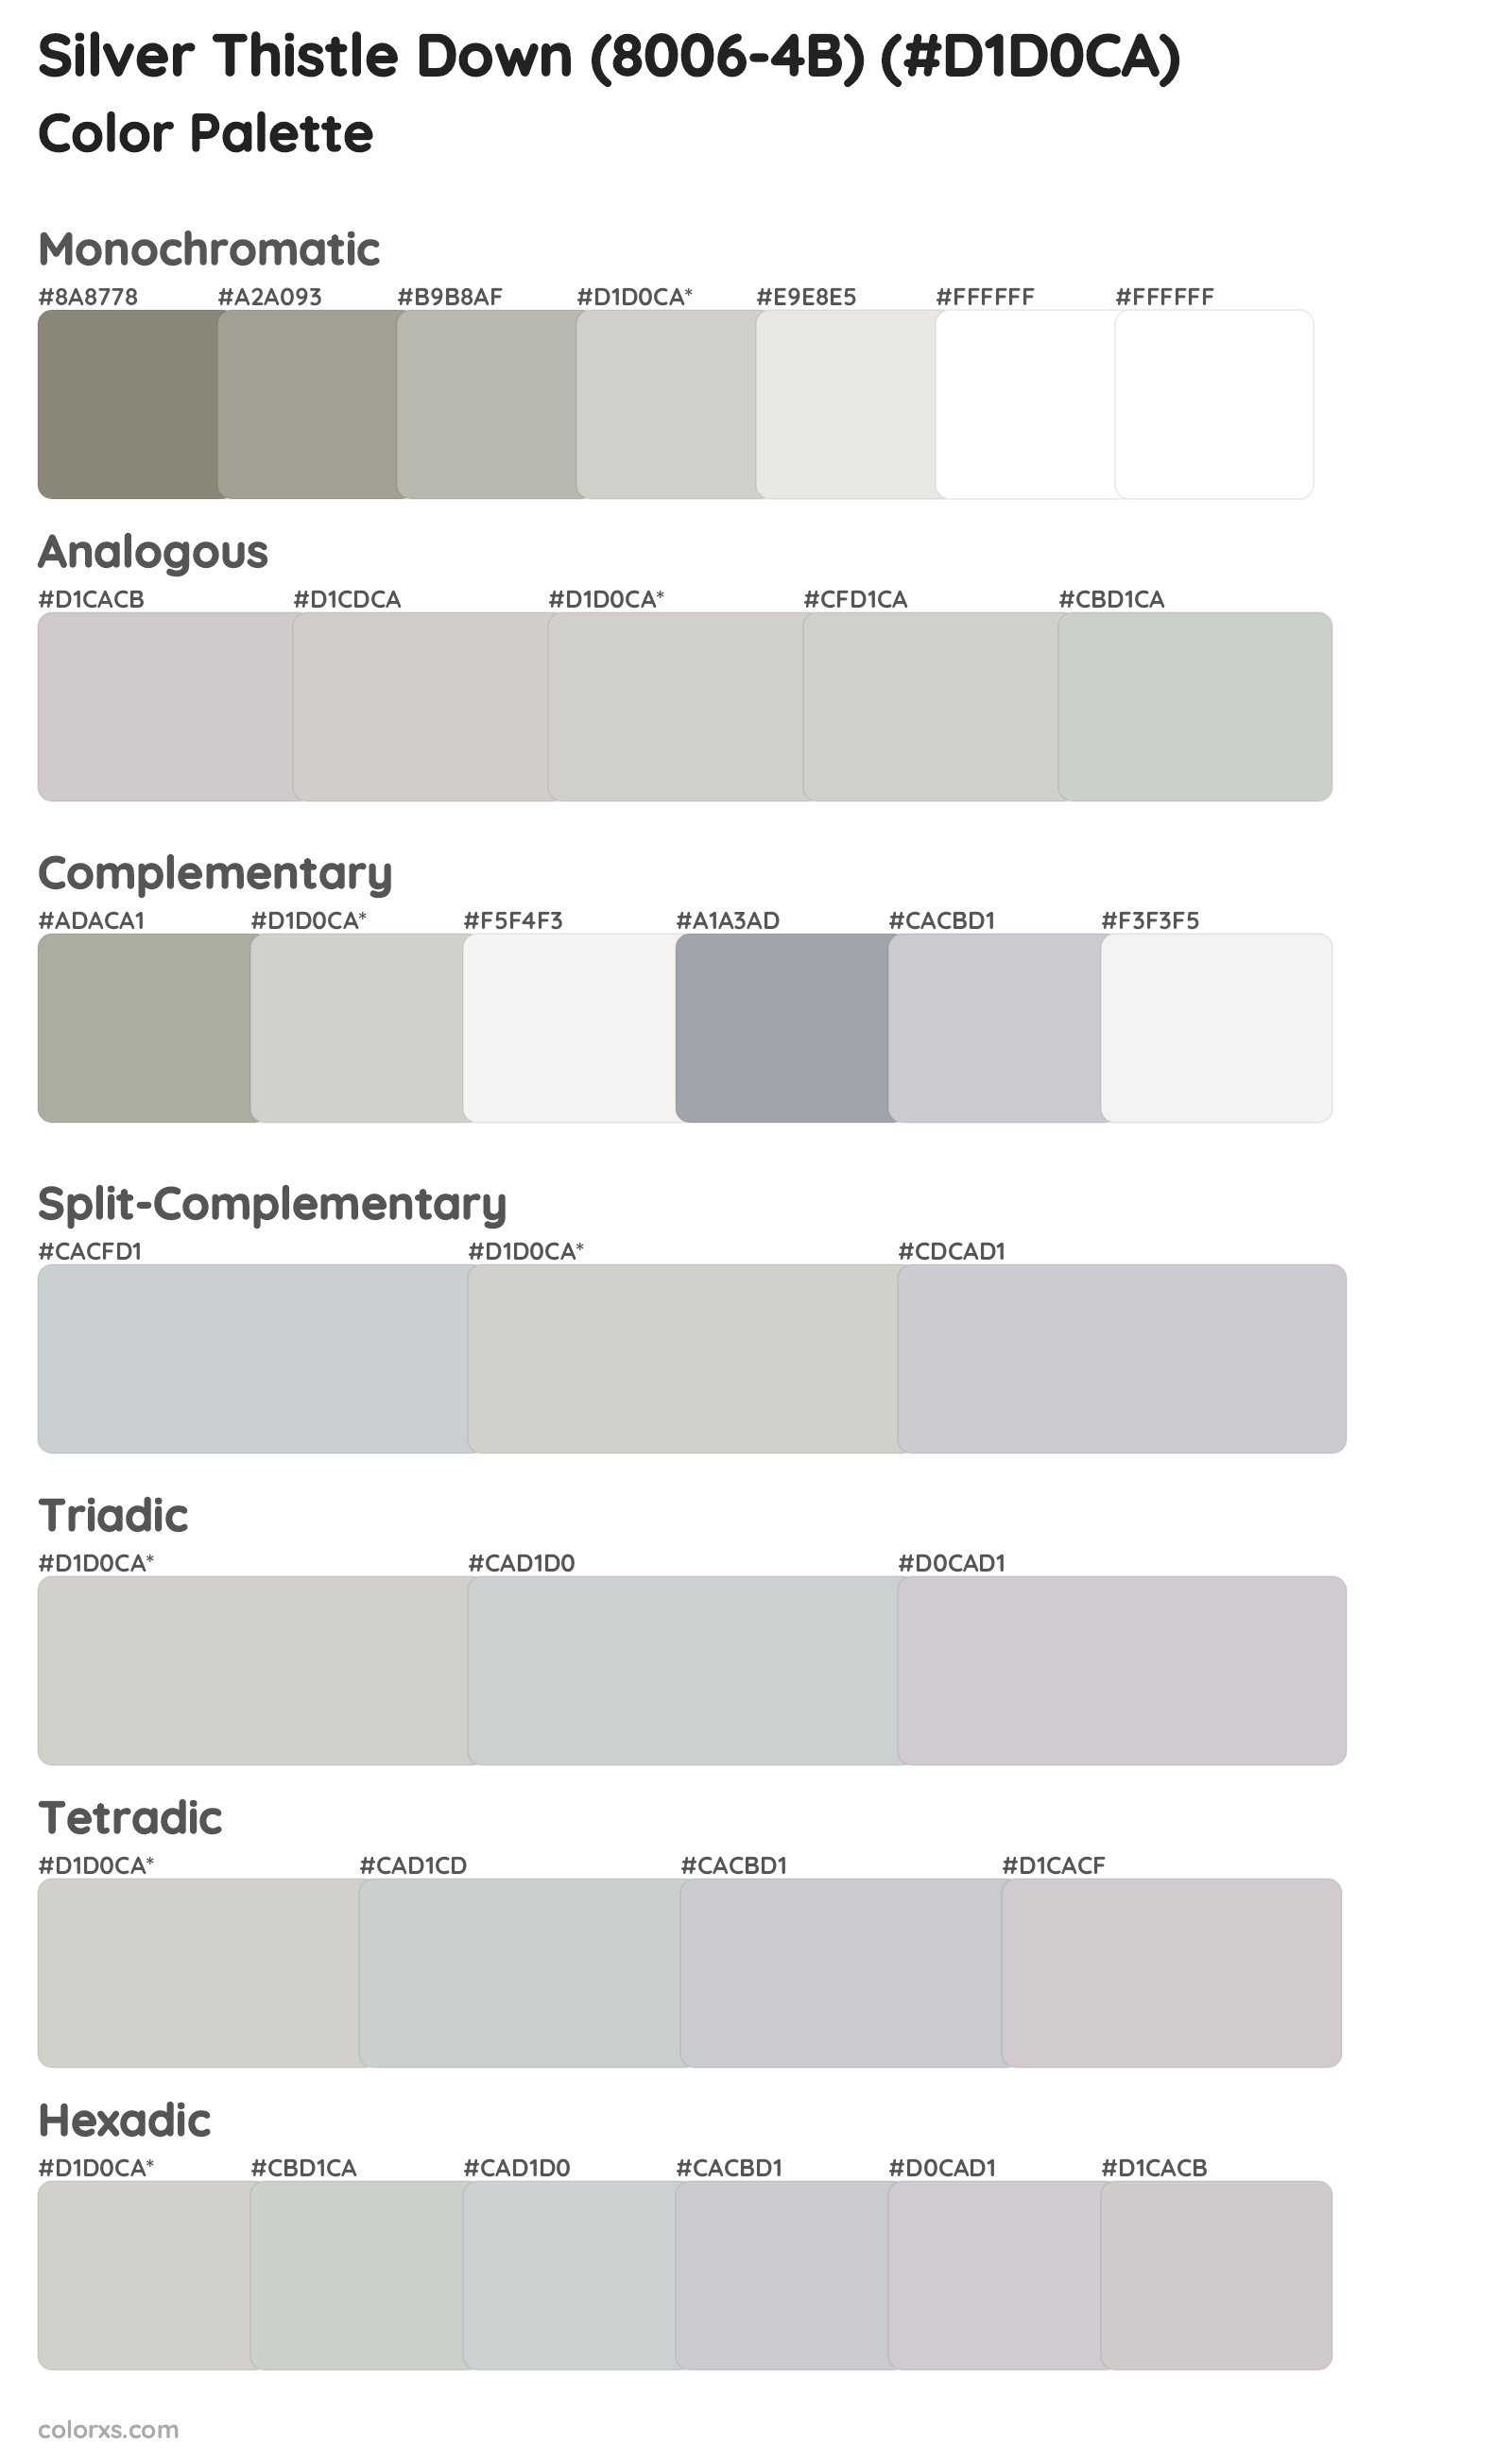 Silver Thistle Down (8006-4B) Color Scheme Palettes